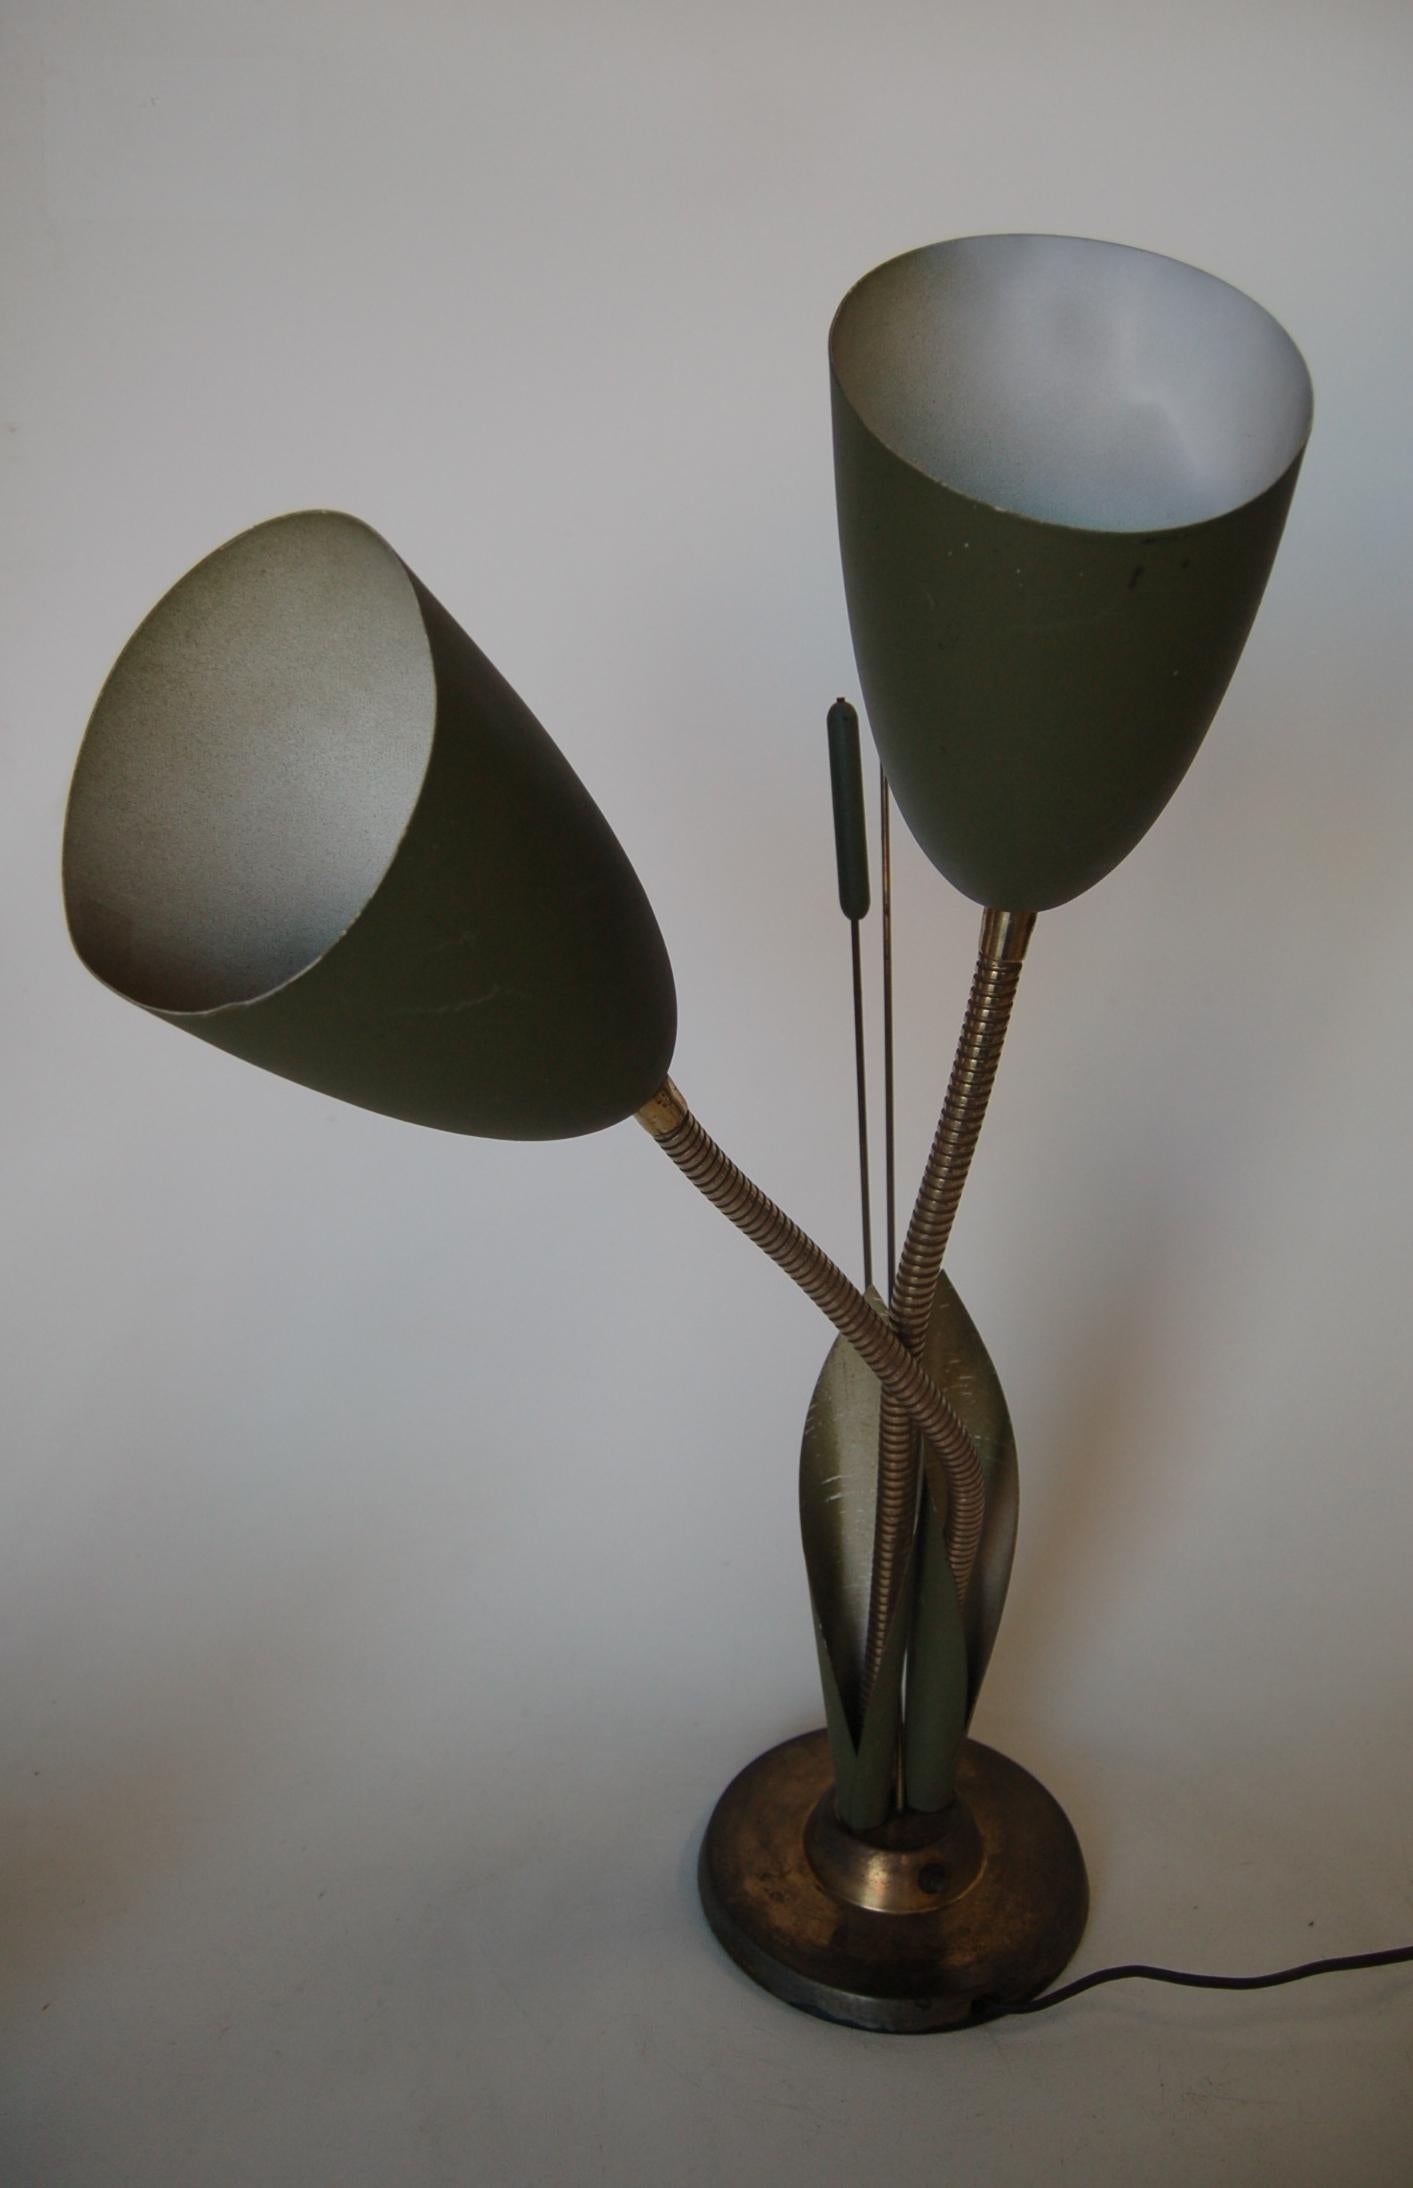 Grüne Metall Mitte des Jahrhunderts doppelter Schwanenhals verstellbarer Flexarm Calla Lily Kegel Schreibtischlampe. 3-Wege-Lichtschalter. 

Maße: 7